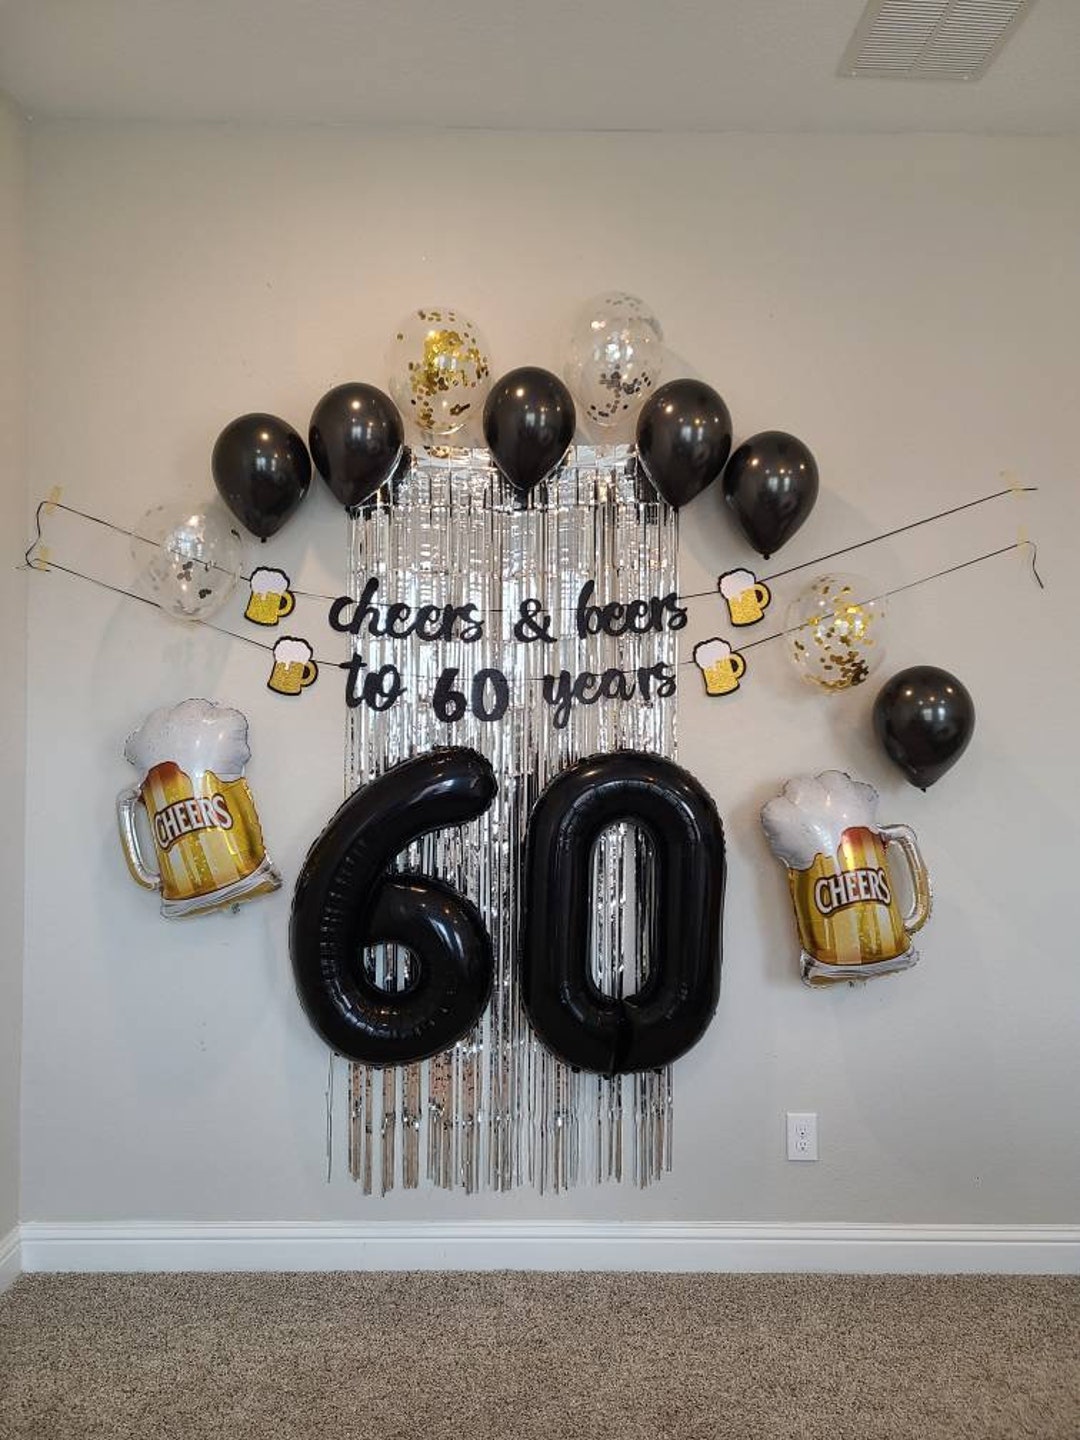 Decoraciones de cumpleaños número 60 para hombres: pancarta de feliz  cumpleaños, globos de cumpleaños de 60 años, globos de fiesta de cumpleaños  con